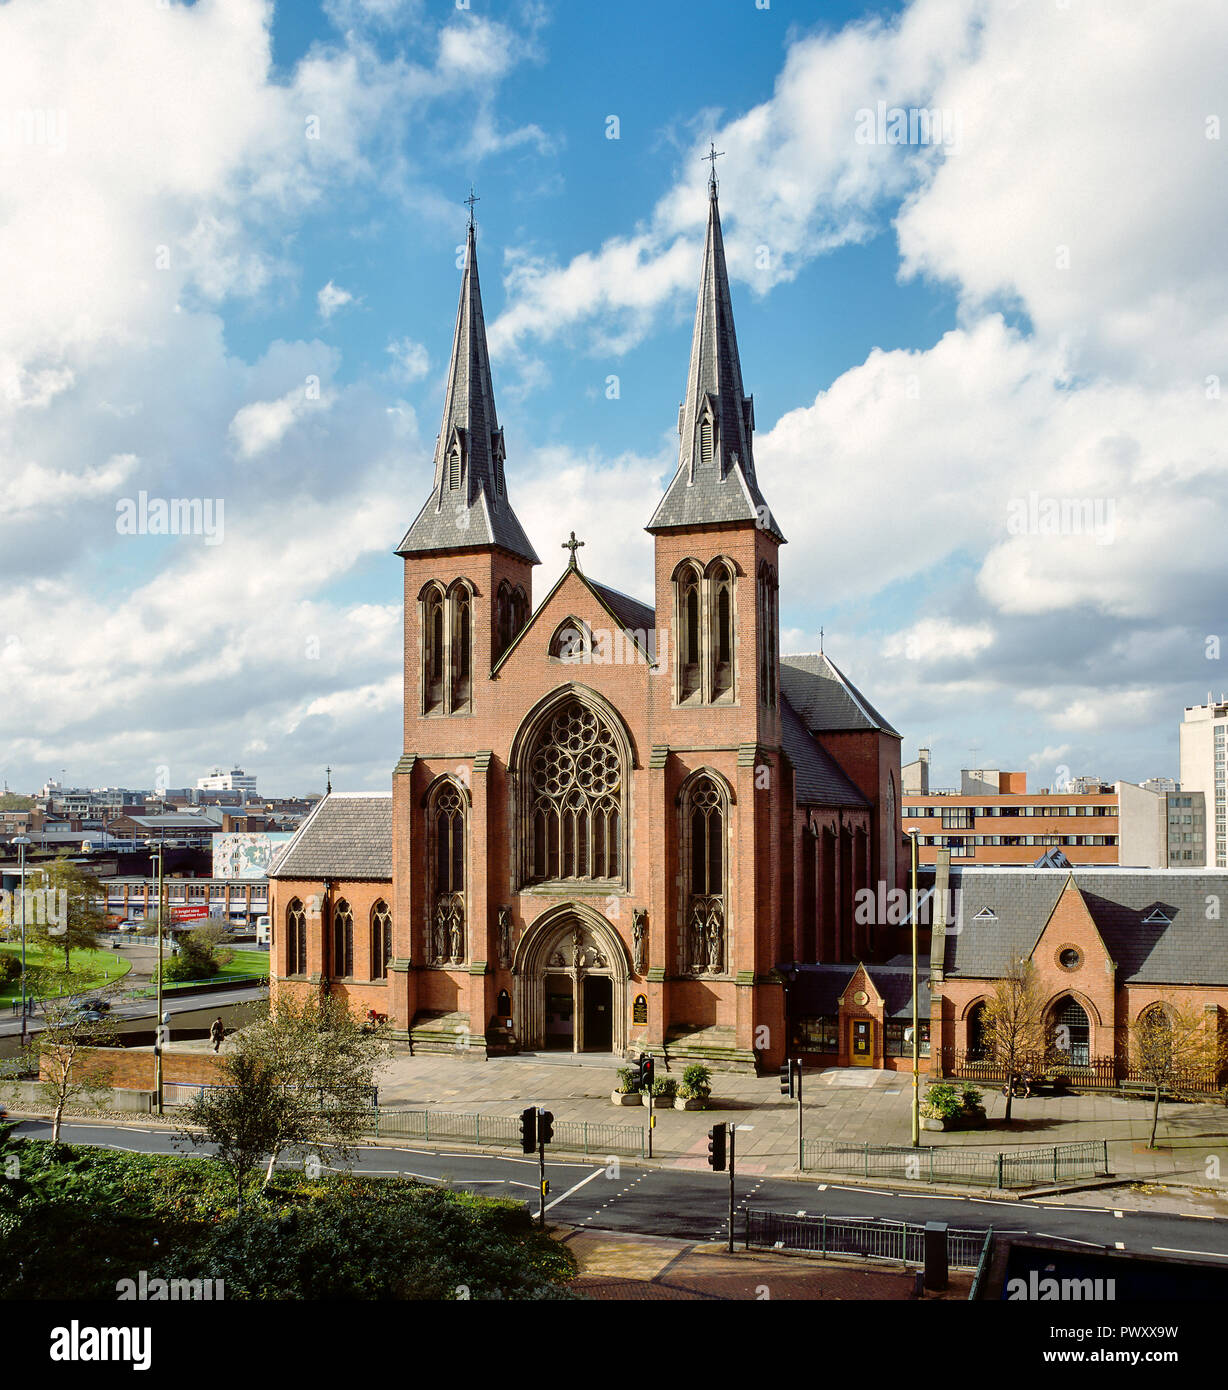 St Chad's Cathedral, Birmingham, Reino Unido. Construido en 1841 por A.W. Pugin, fue la primera catedral Católica Romana construido en Inglaterra desde la reforma Foto de stock